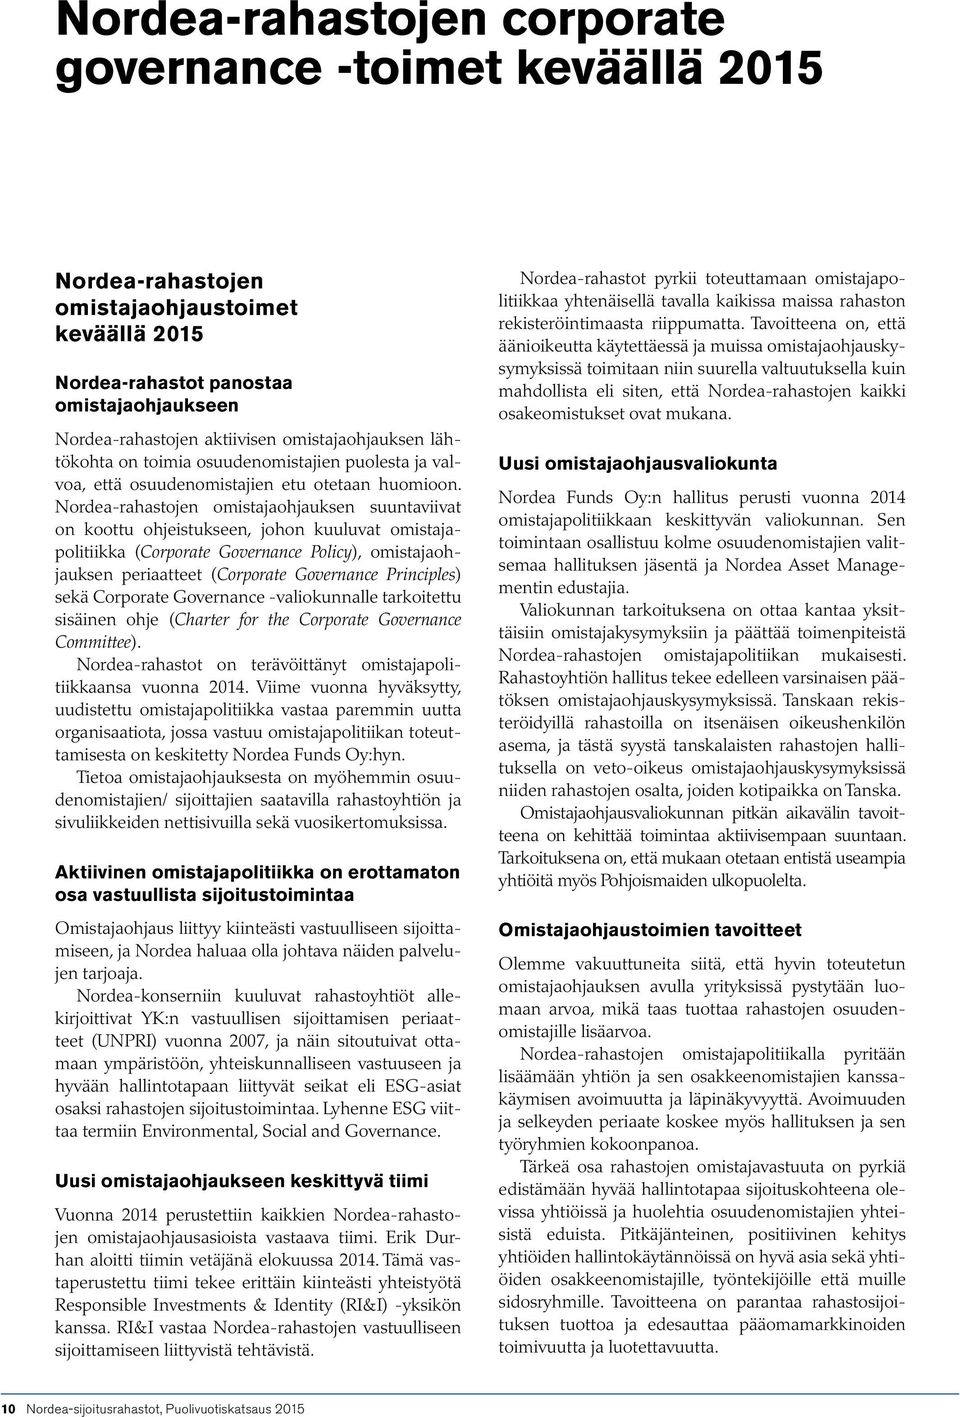 Nordea-rahastojen omistajaohjauksen suuntaviivat on koottu ohjeistukseen, johon kuuluvat omistajapolitiikka (Corporate Governance Policy), omistajaohjauksen periaatteet (Corporate Governance